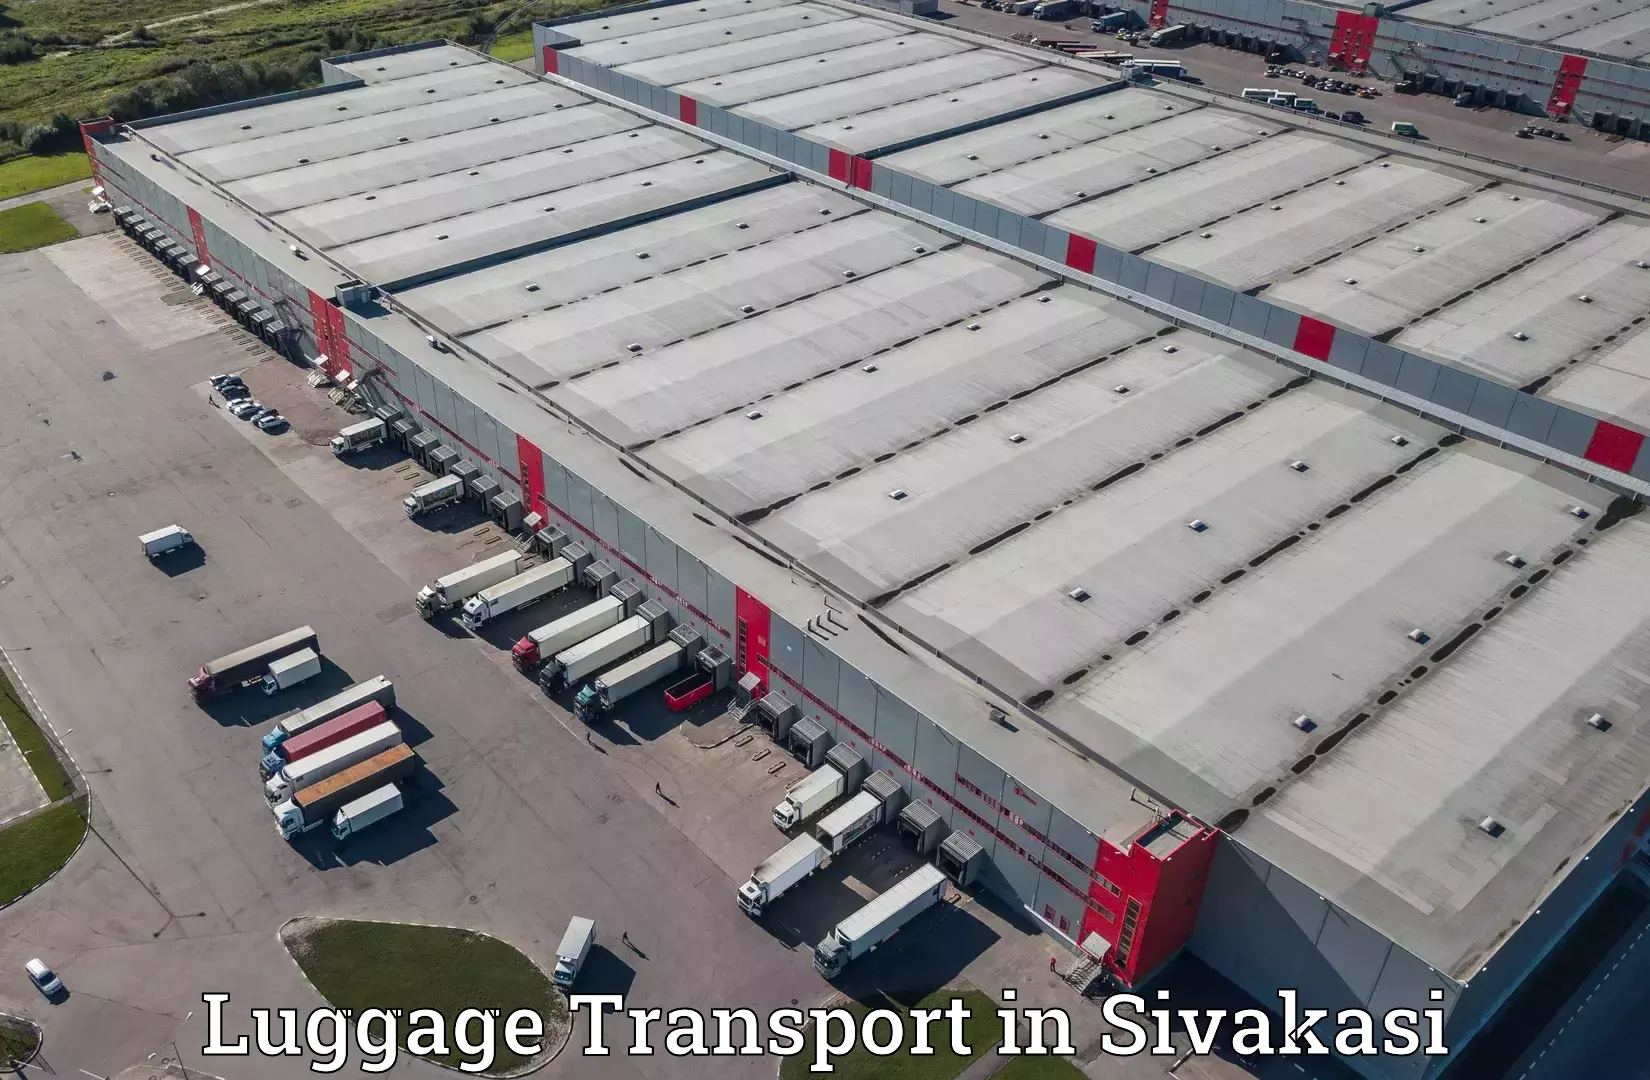 Baggage transport technology in Sivakasi